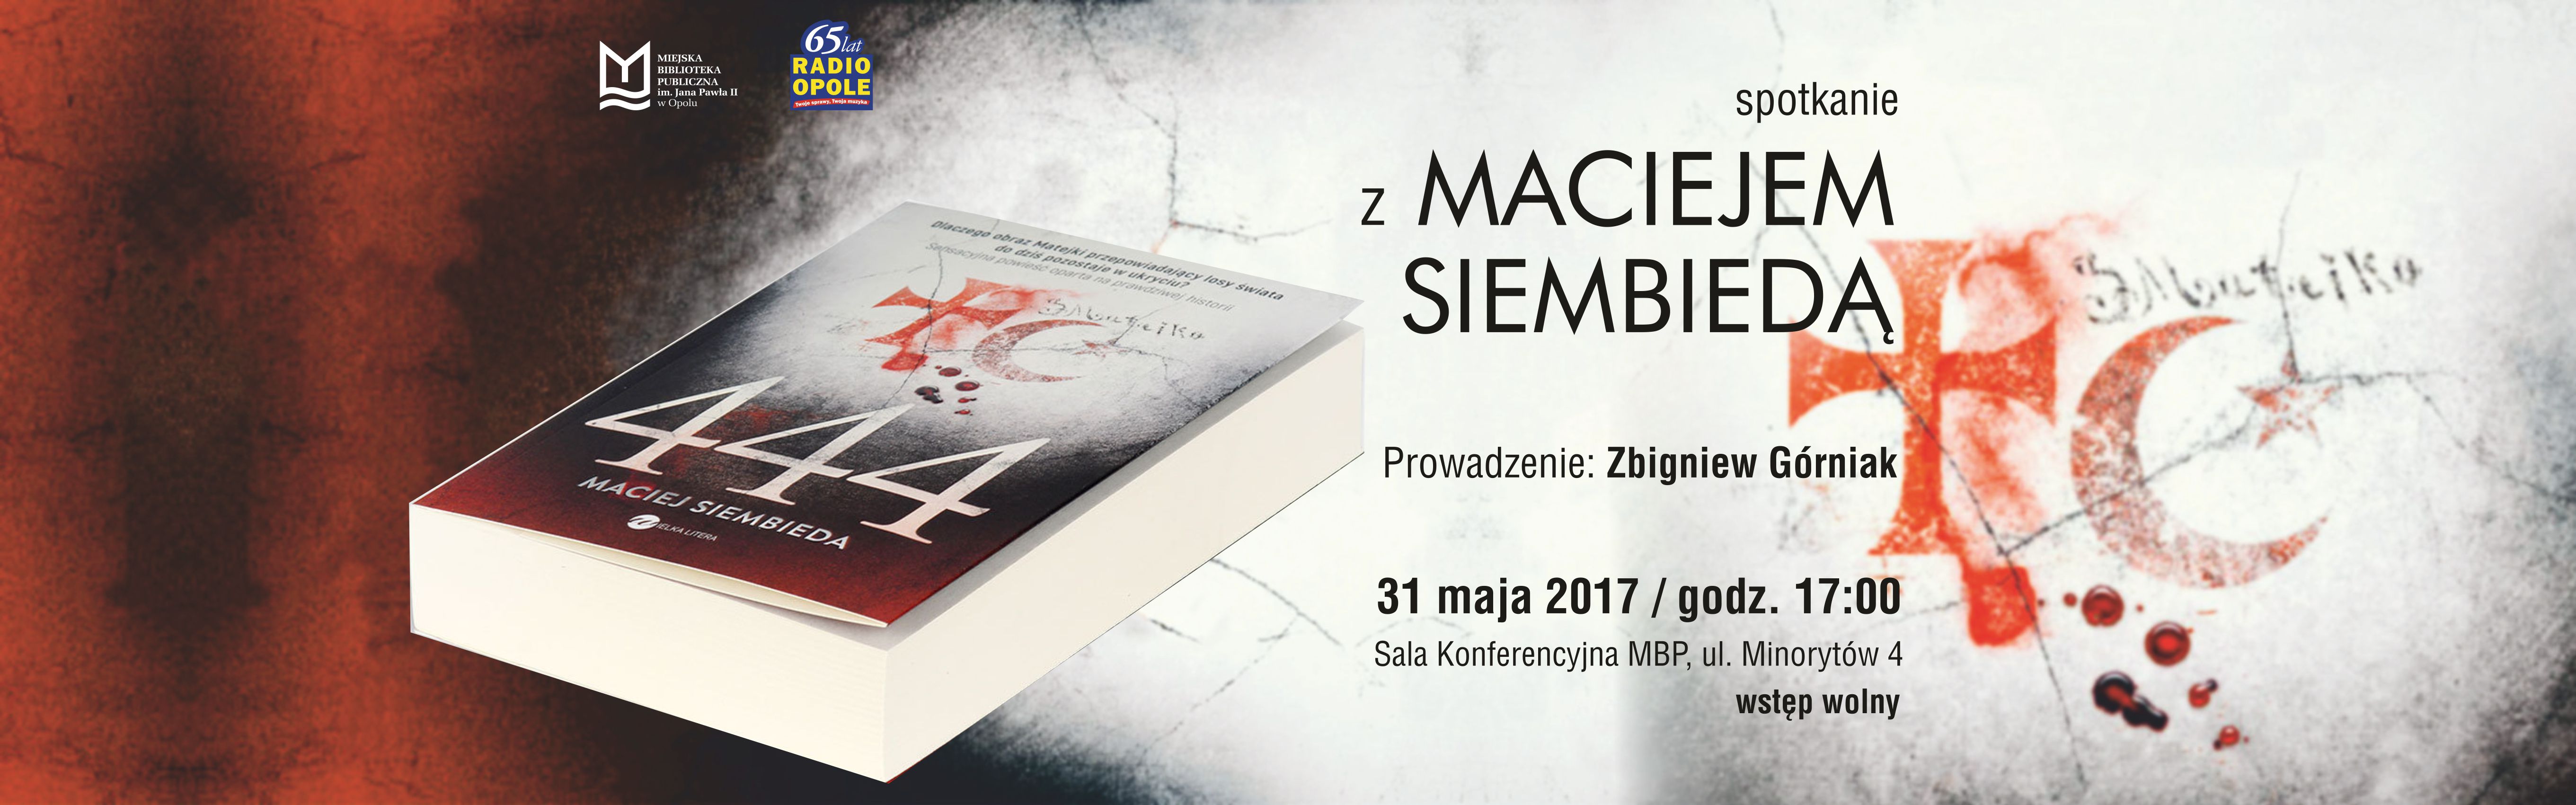 Debiutancka powieść Macieja Siembiedy już jest - przyjdź na spotkanie z autorem!